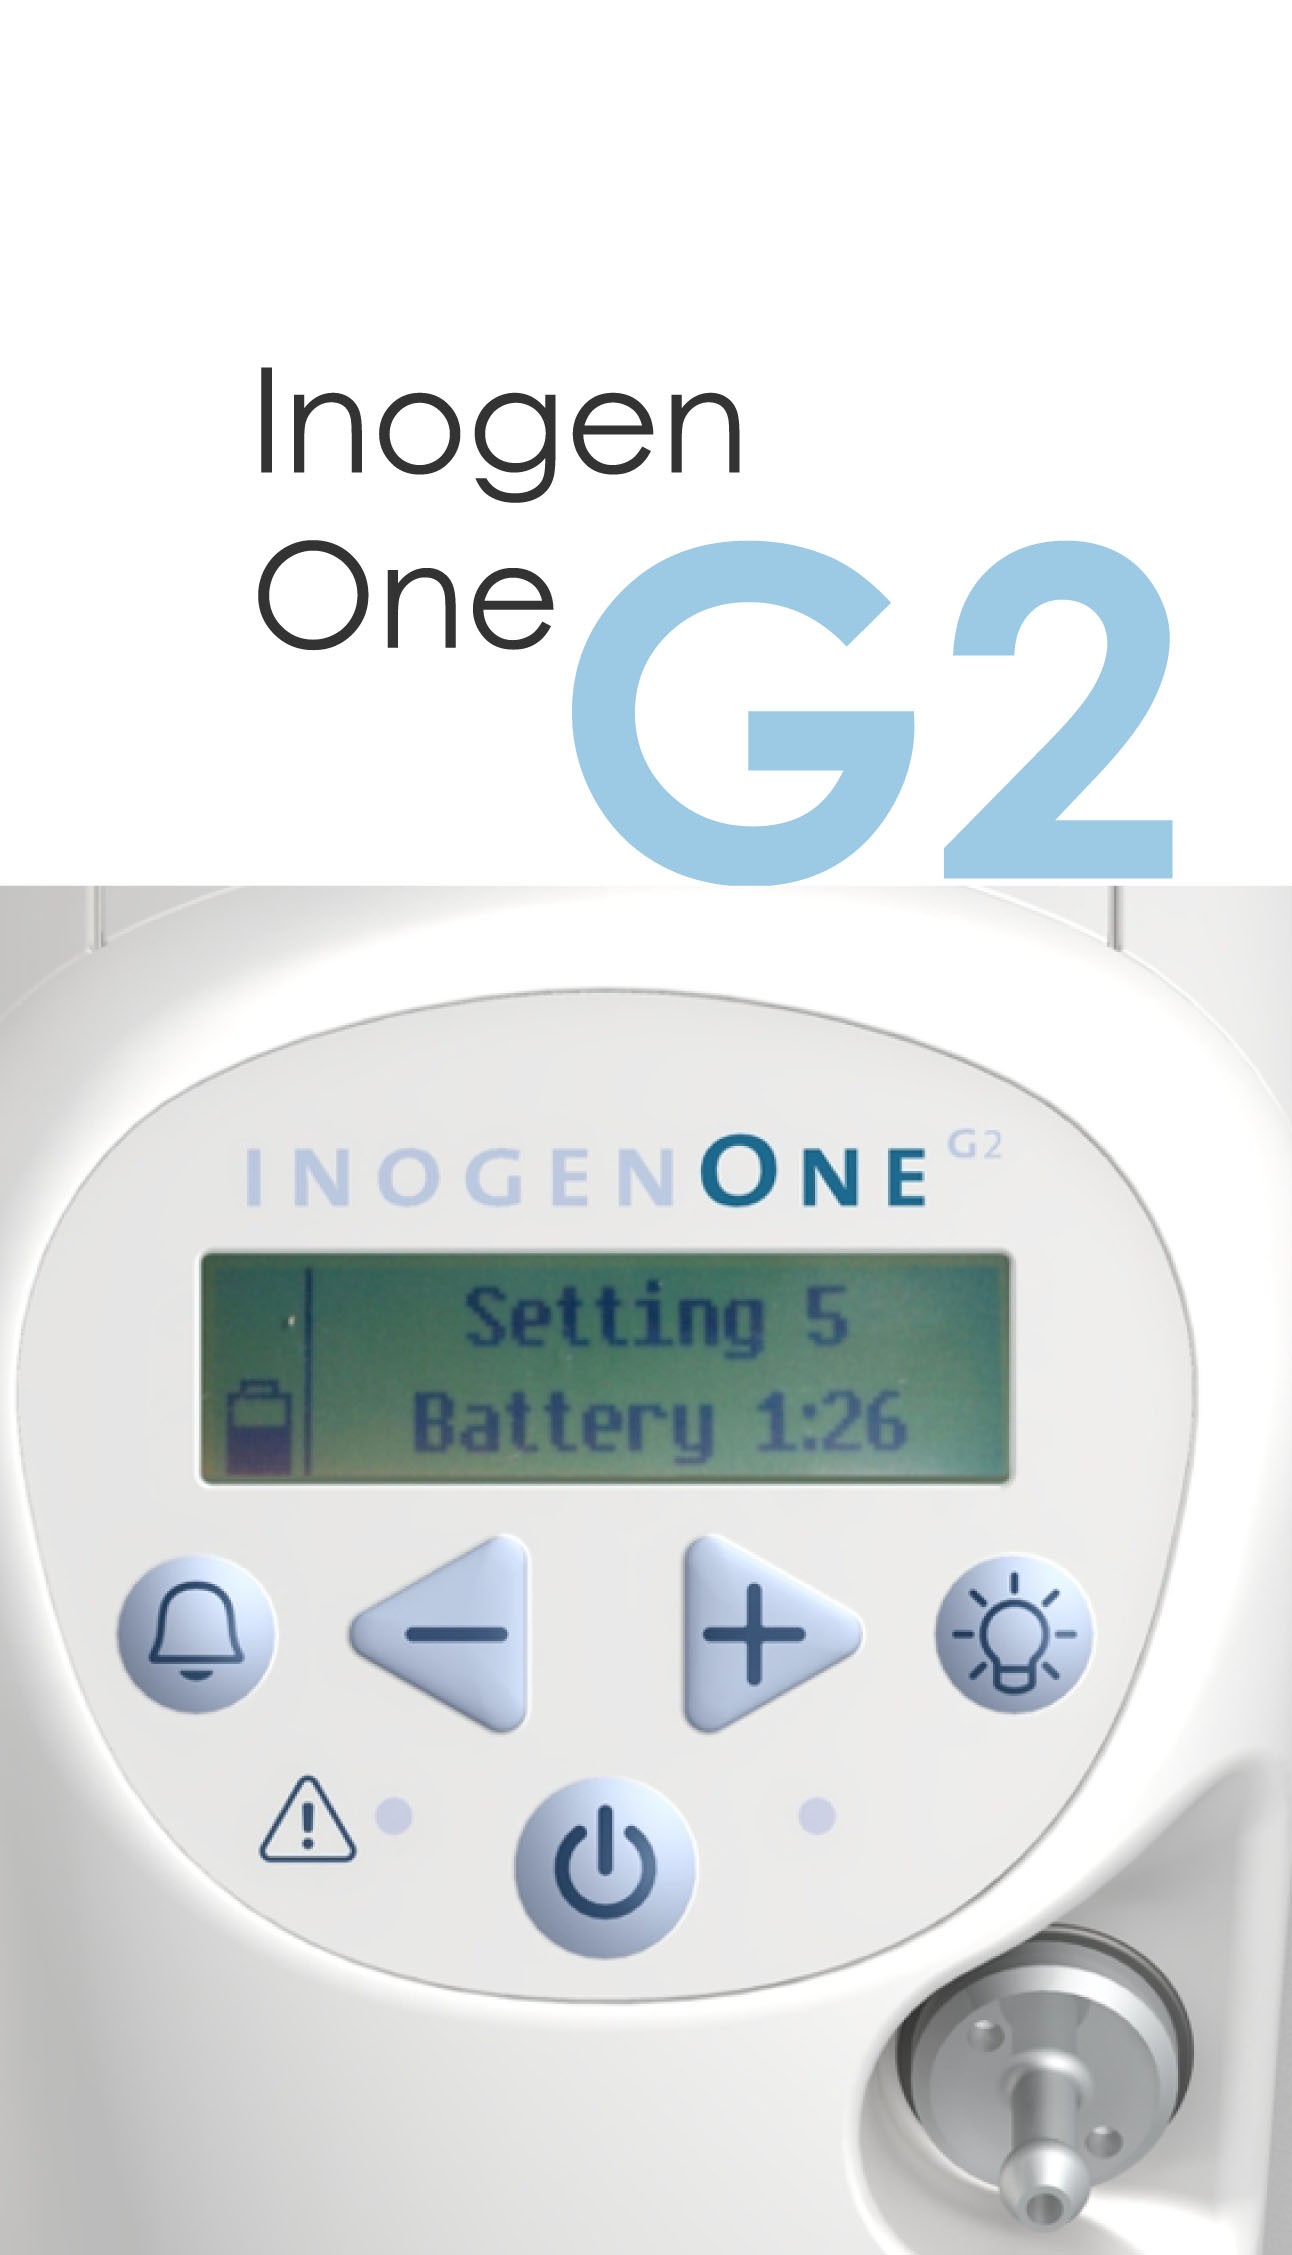 Inogen One G2